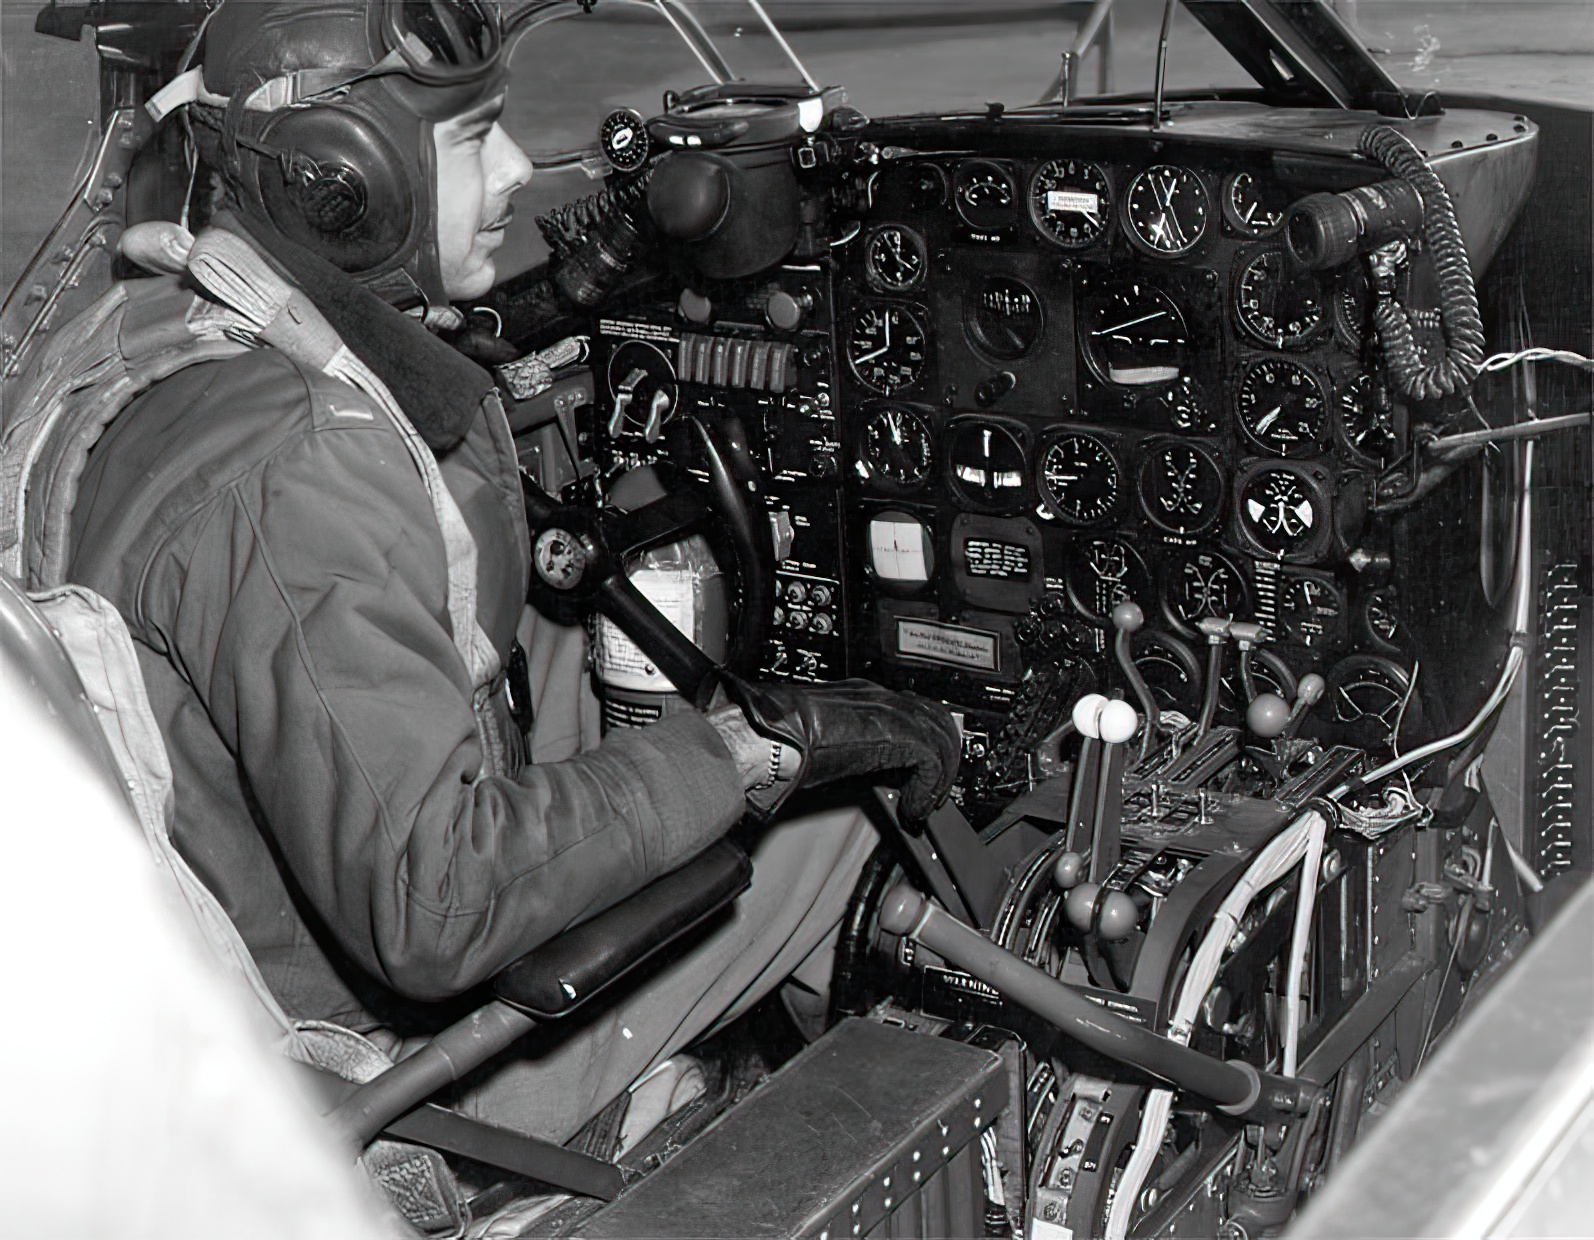 A-26 Invader cockpit